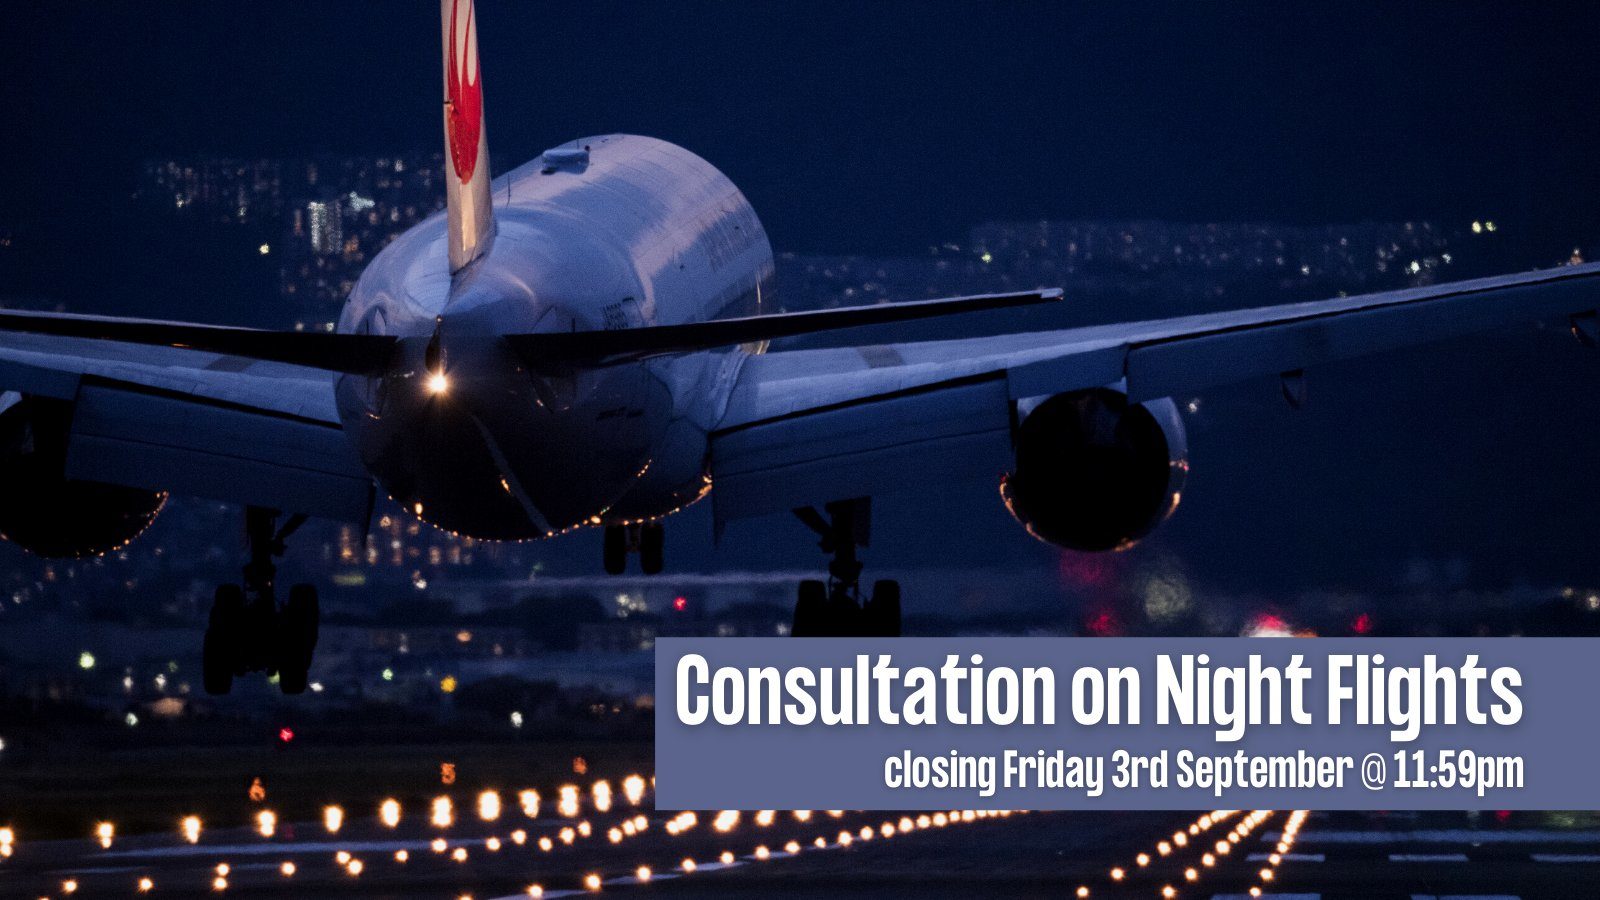 Night Flights Consultation